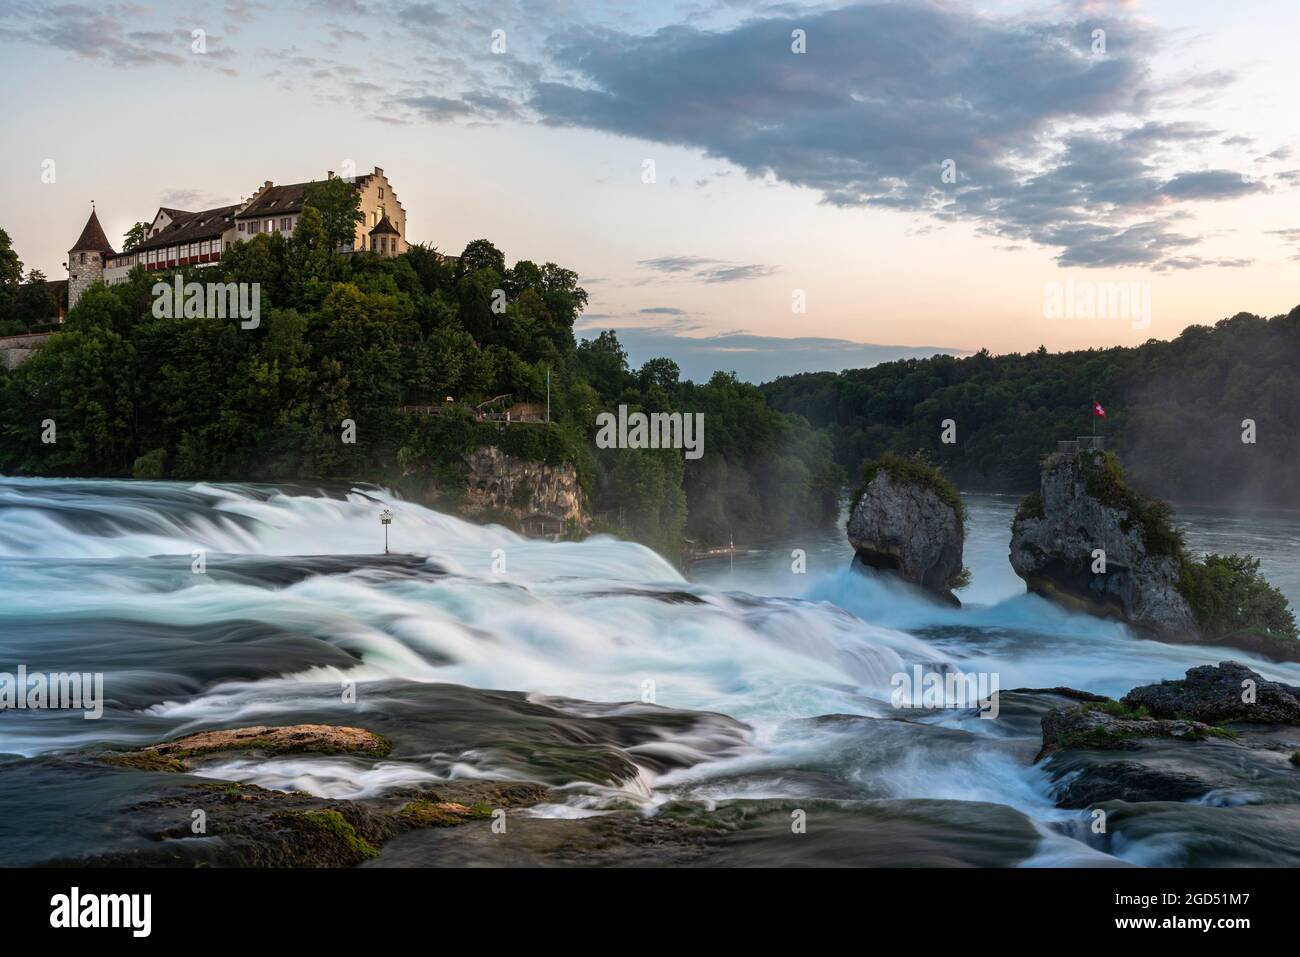 Geografía / viajes, Suiza, Schaffhausen, Neuhausen, Rhin Falls con el castillo de Laufen, DERECHOS ADICIONALES-LIQUIDACIÓN-INFO-NO DISPONIBLE Foto de stock